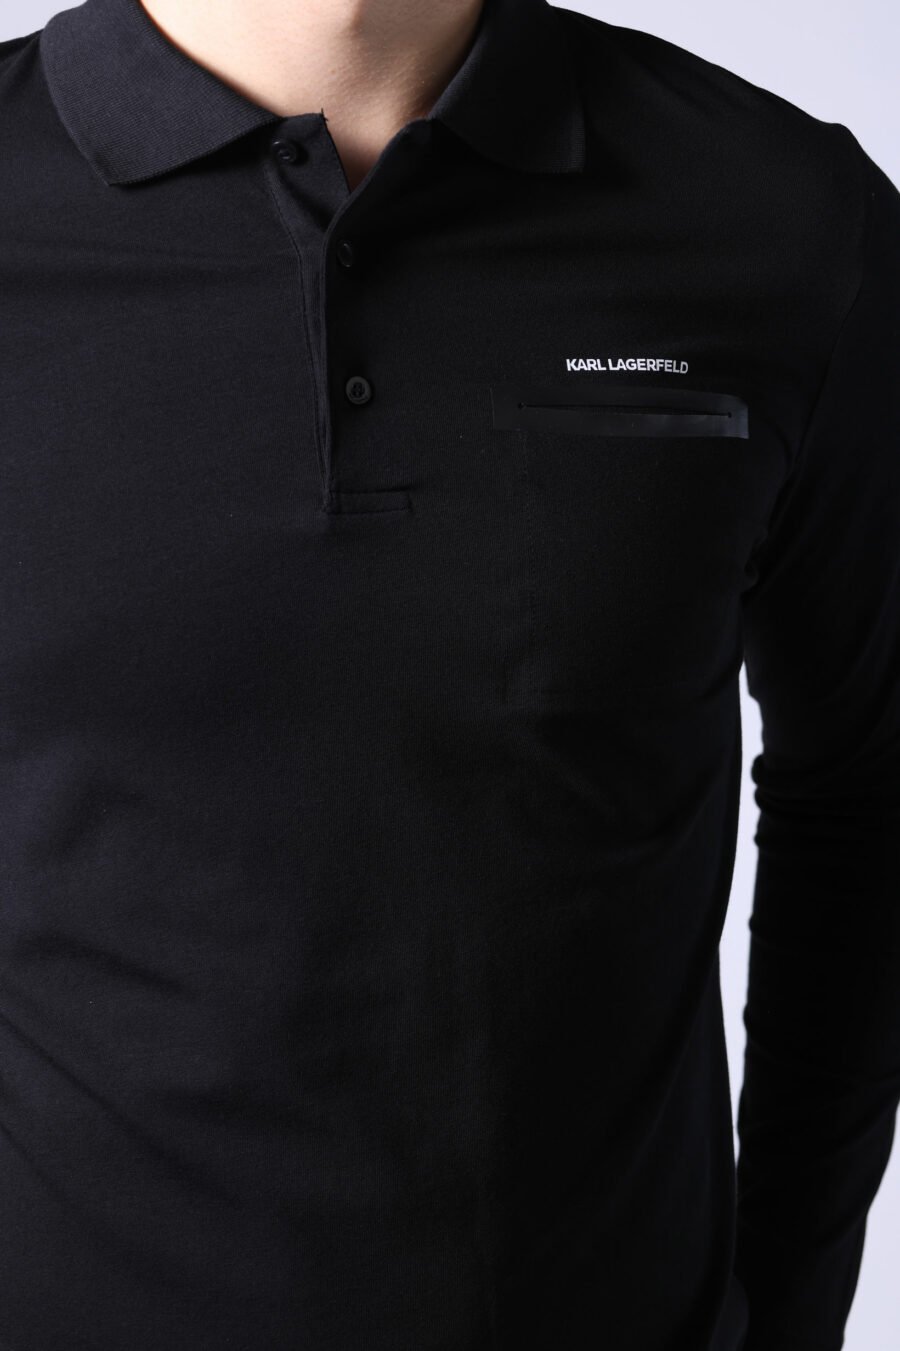 Langärmeliges schwarzes Poloshirt mit Tasche - Untitled Catalog 05794